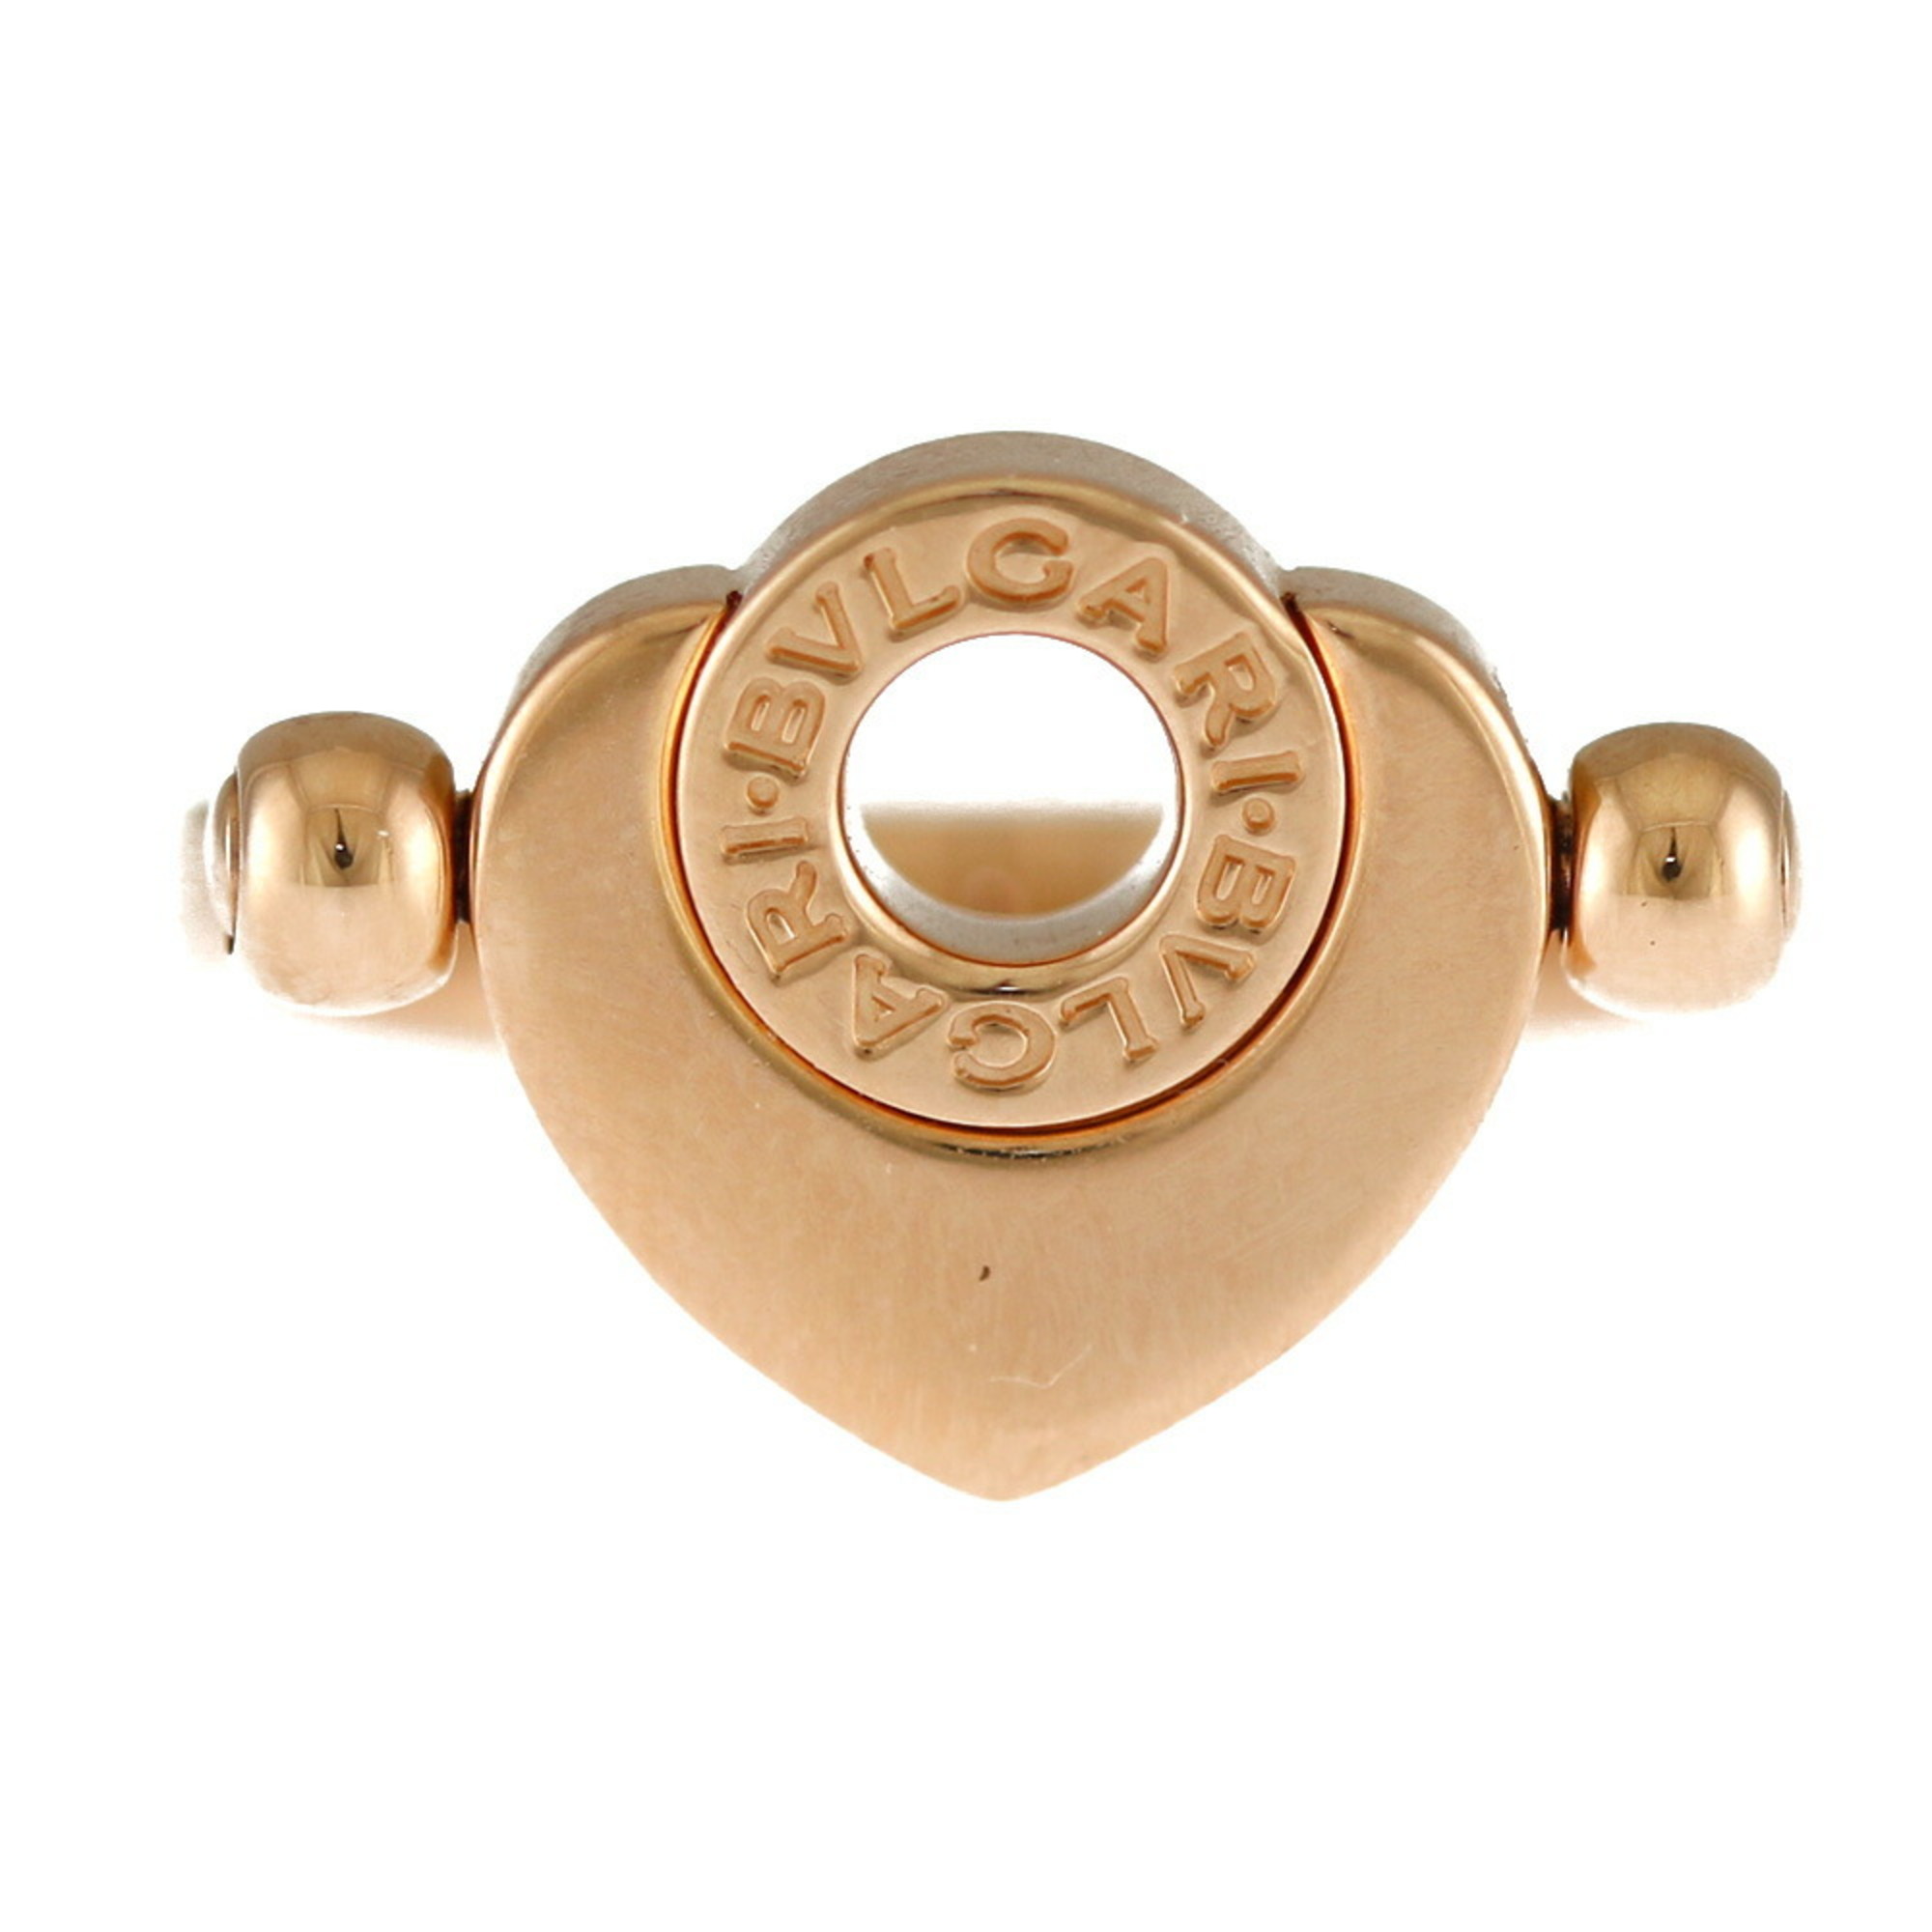 BVLGARI Cuore Lip Ring, Size 6, 18K Gold, Shell, Women's, BVLGARI, Heart